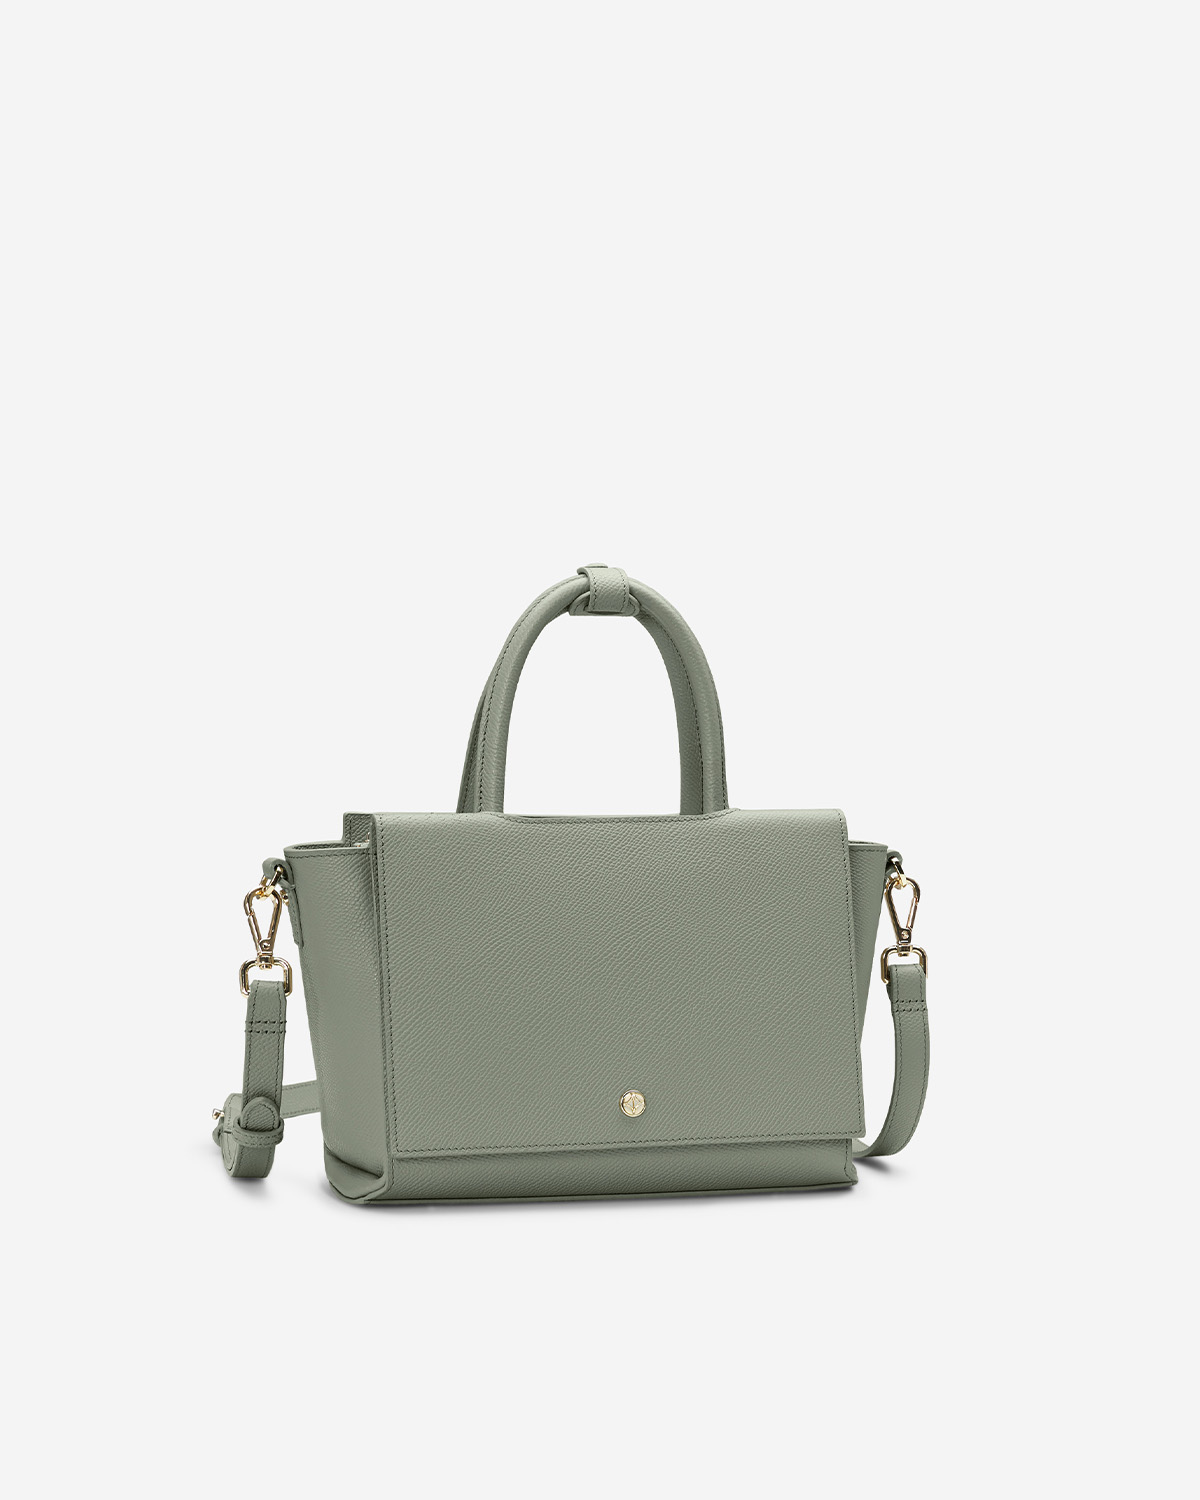 กระเป๋าถือหนังแท้ VERA Heidi Leather Handbag, ไซส์ 28 สี Sage